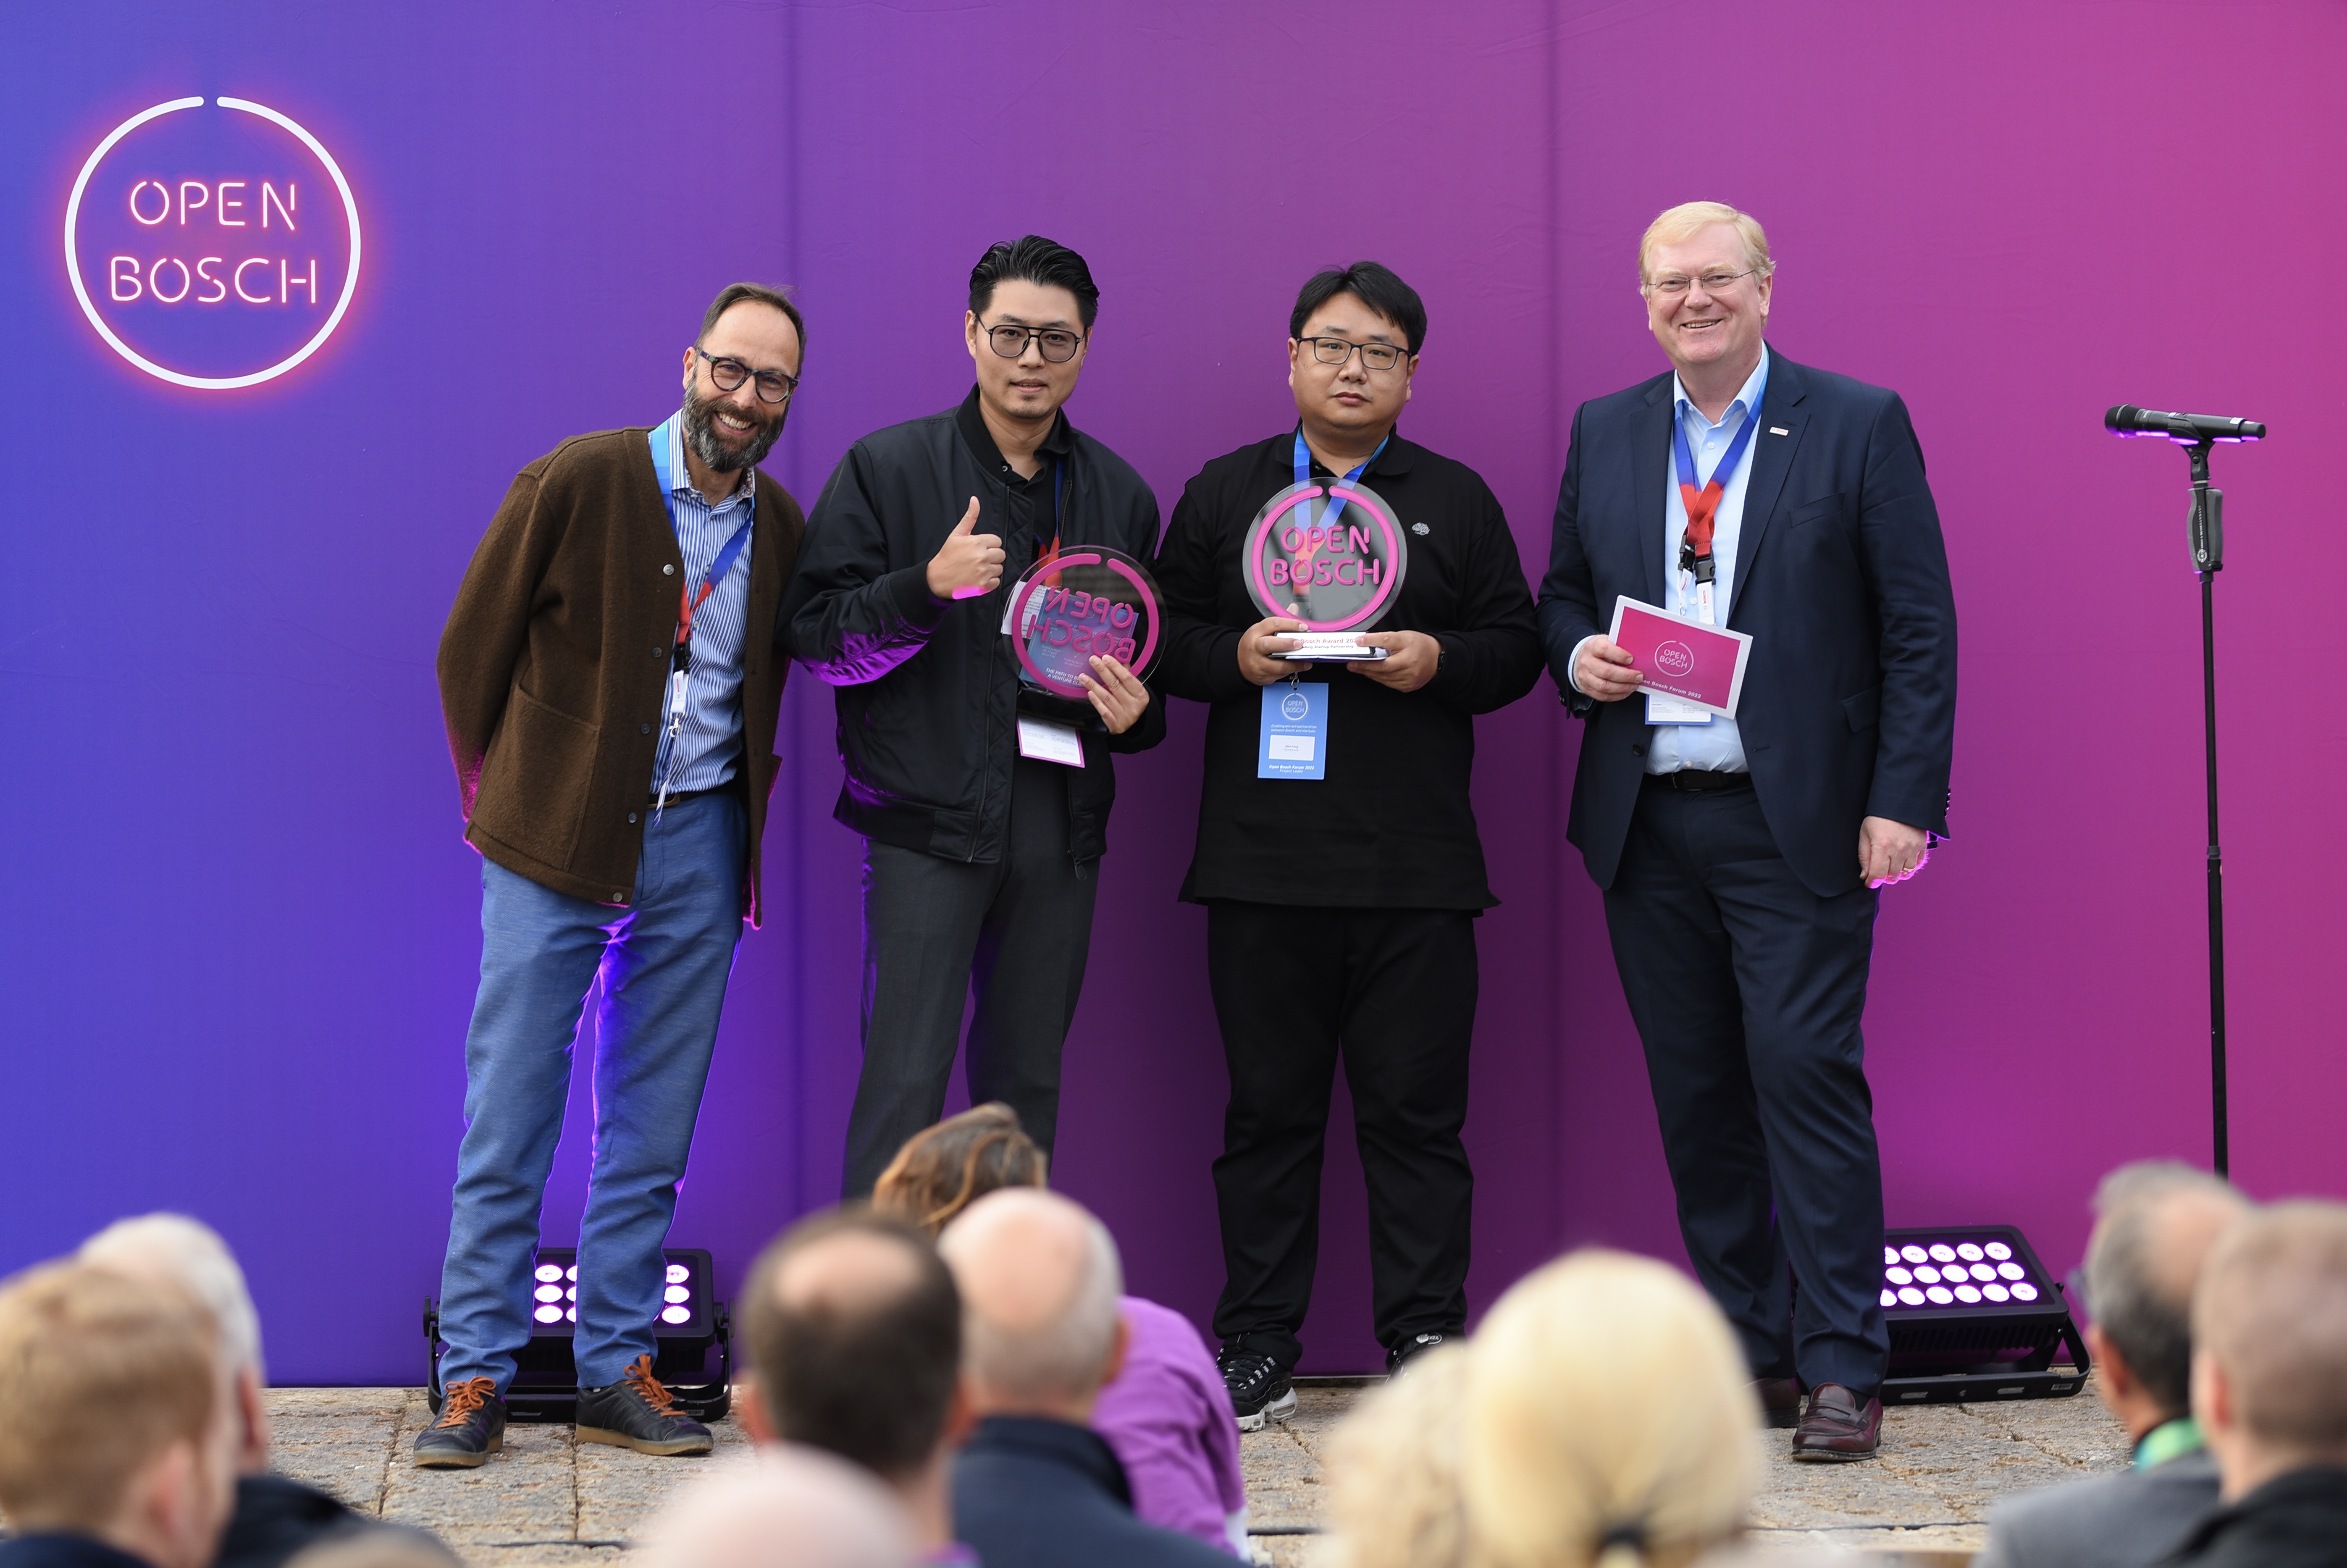 Open Bosch Award 2022 Winner on stage – Ambrose Chow (Business Director Grea Technology); Qian Feng, Stephan Bietz (Vertreter des Bosch Projektes); Dr. Stefan Hartung (Vorsitzender der Geschäftsführung der Robert Bosch GmbH)